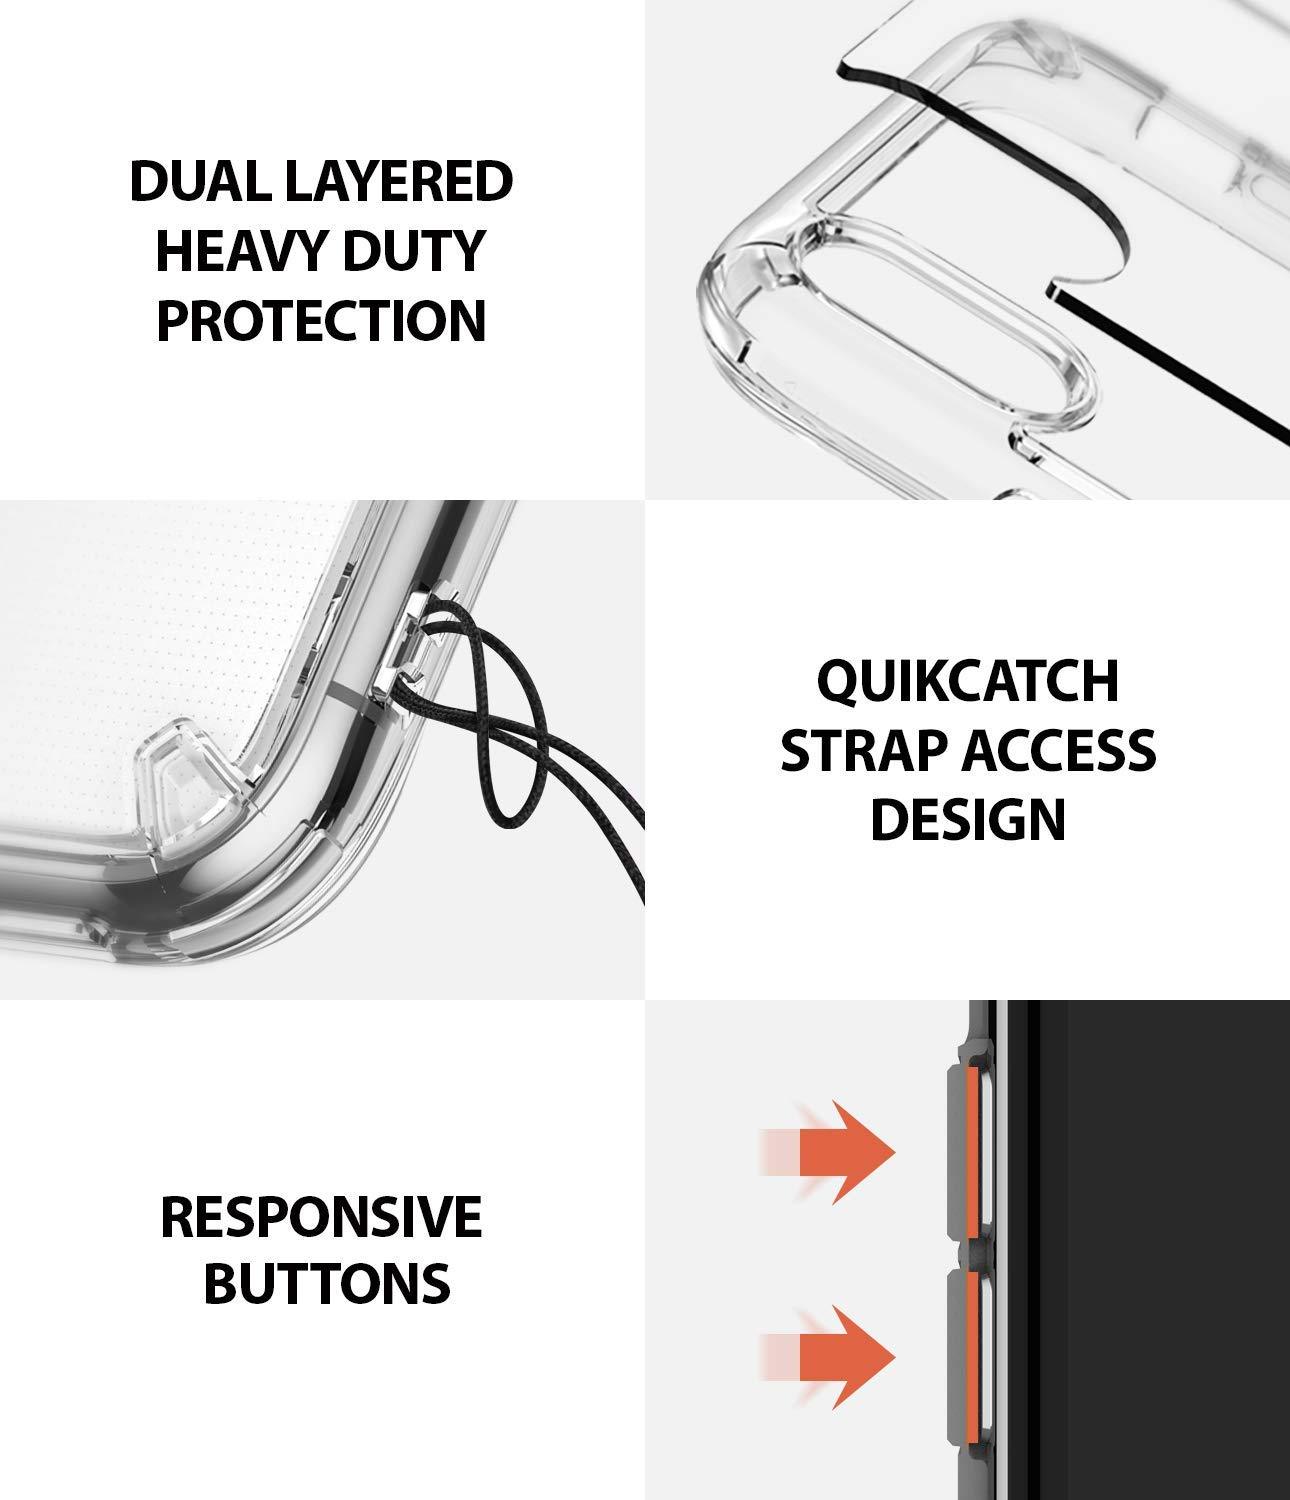 Ốp lưng chống sốc Ringke Fusion cho iPhone XS/X / iPhone XR / iPhone XS Max - Hàng chính hãng